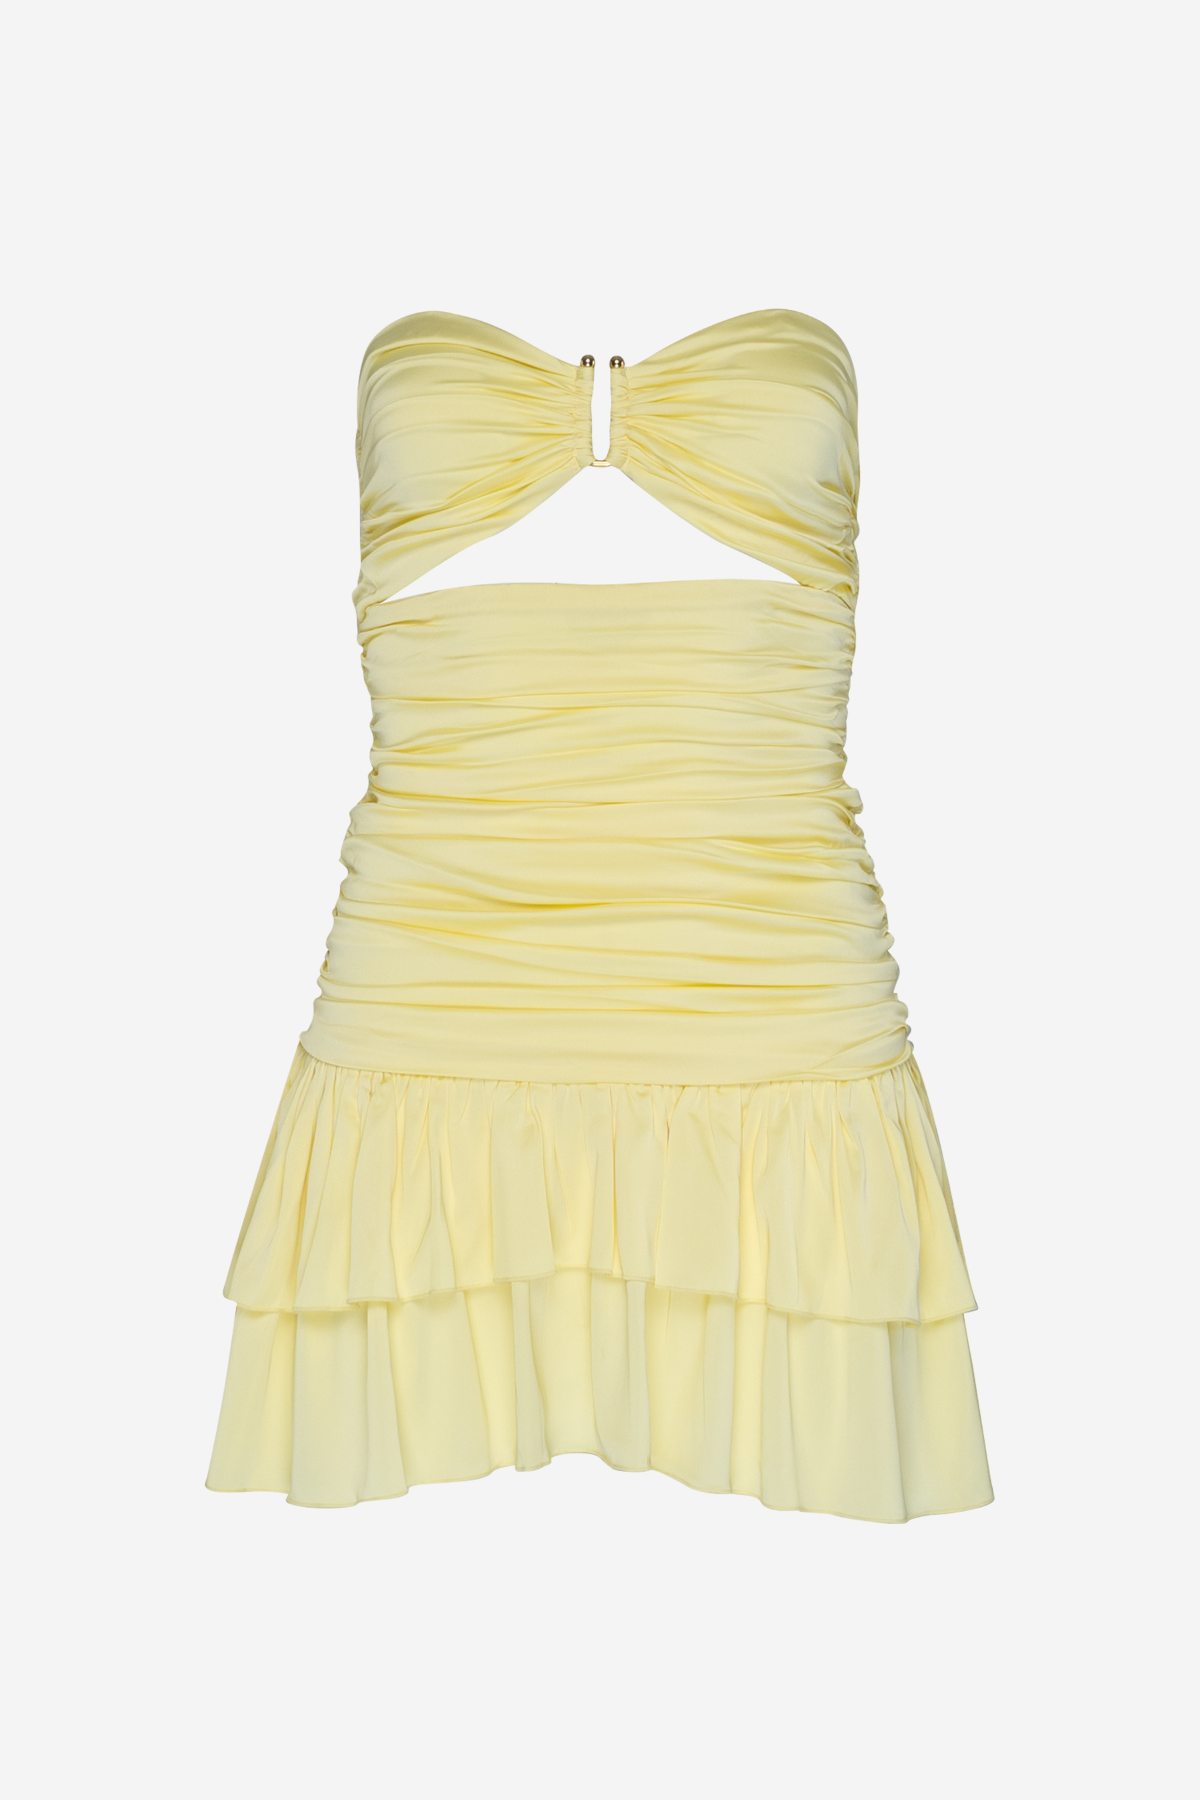 Kaia mini Dress in Citron Yellow